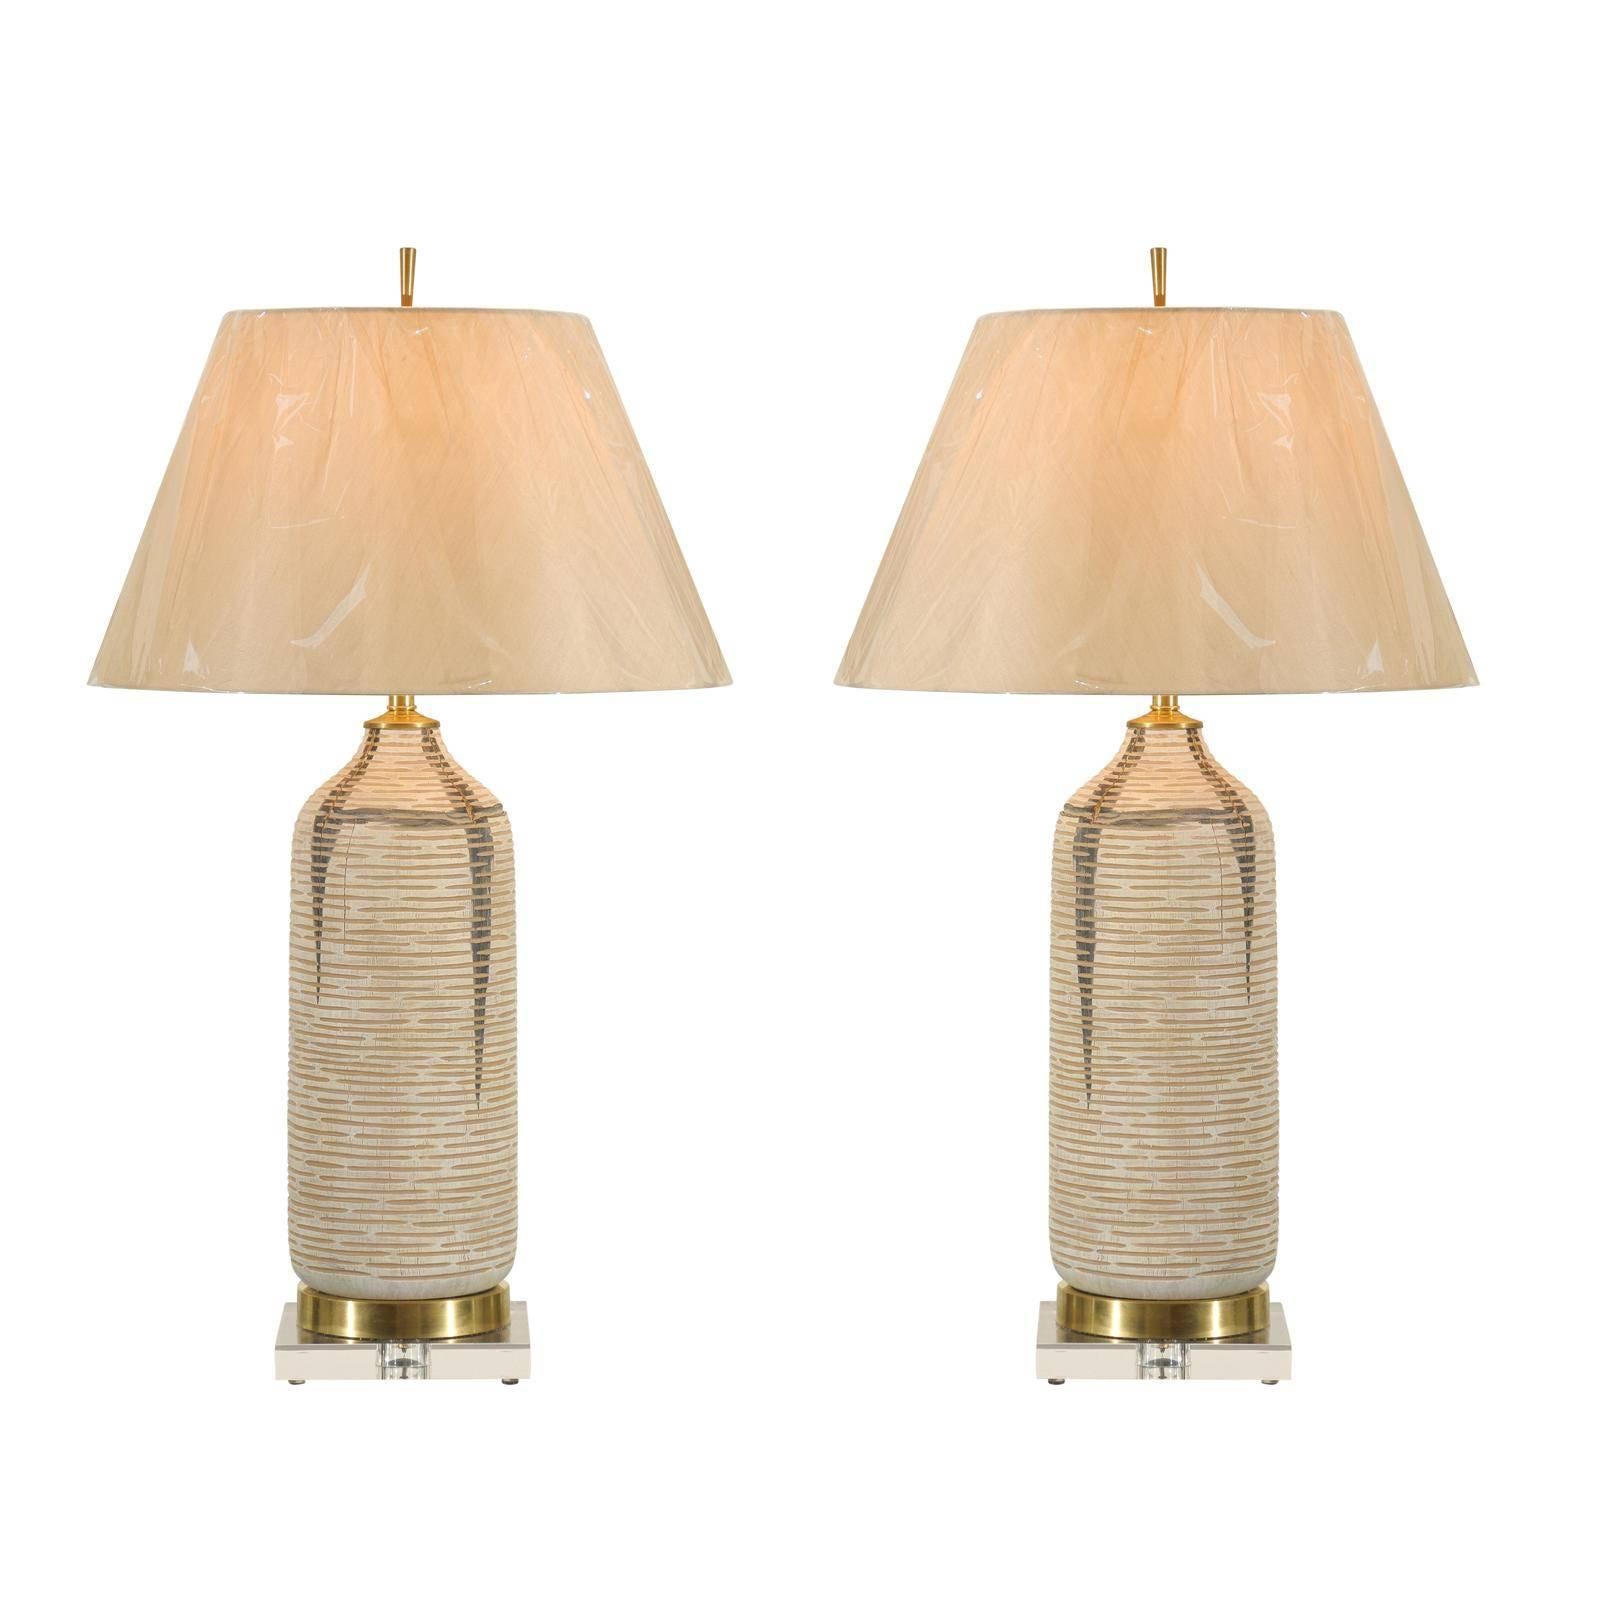 Belle paire de récipients en bois cérusé vintage convertis en lampes sur-mesure